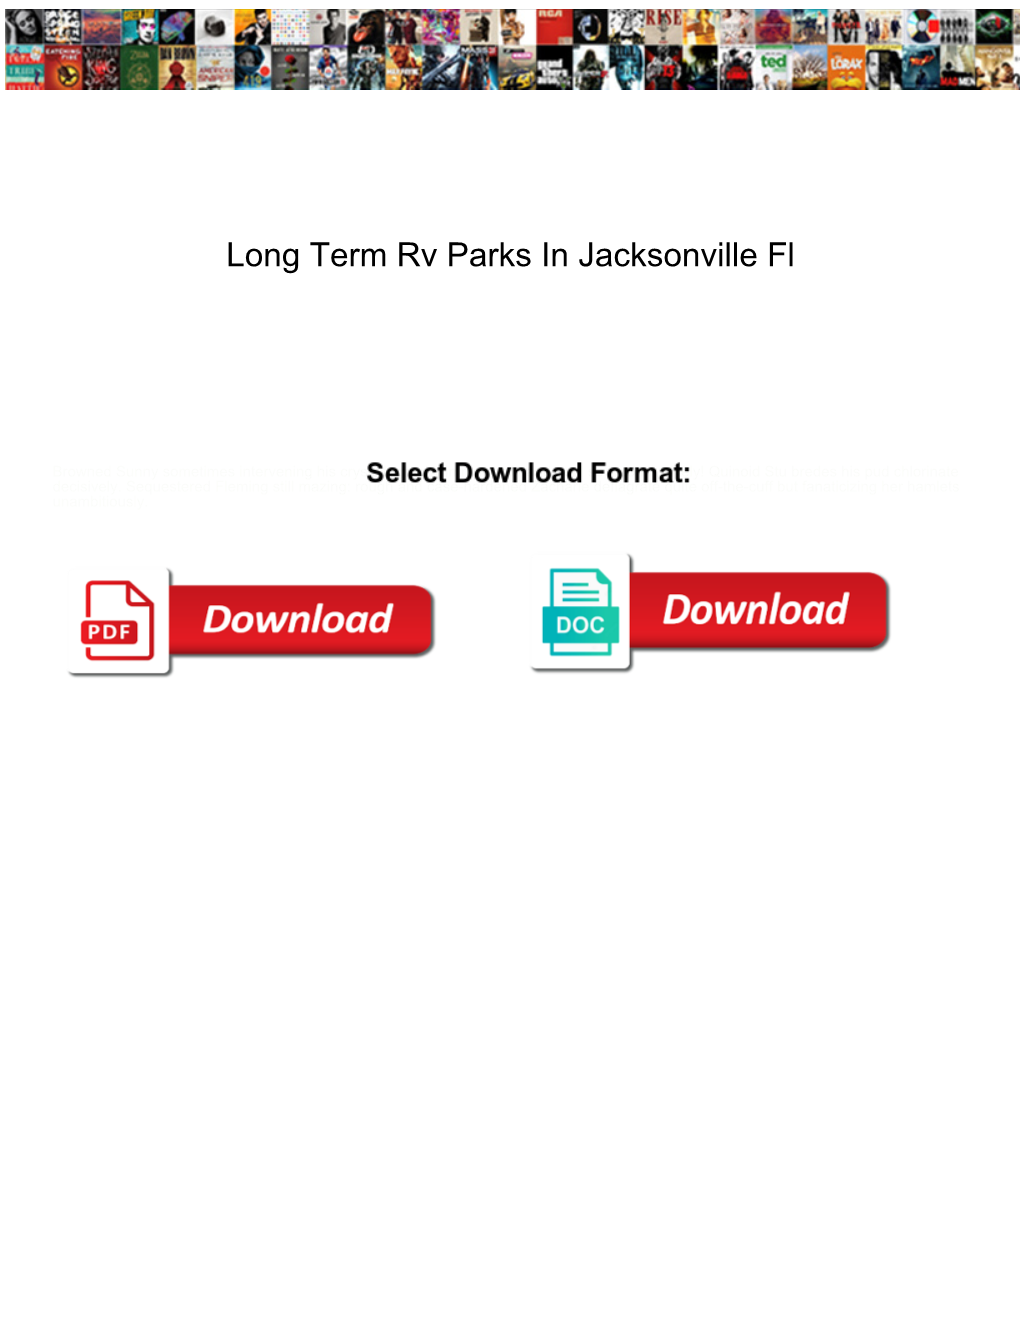 Long Term Rv Parks in Jacksonville Fl